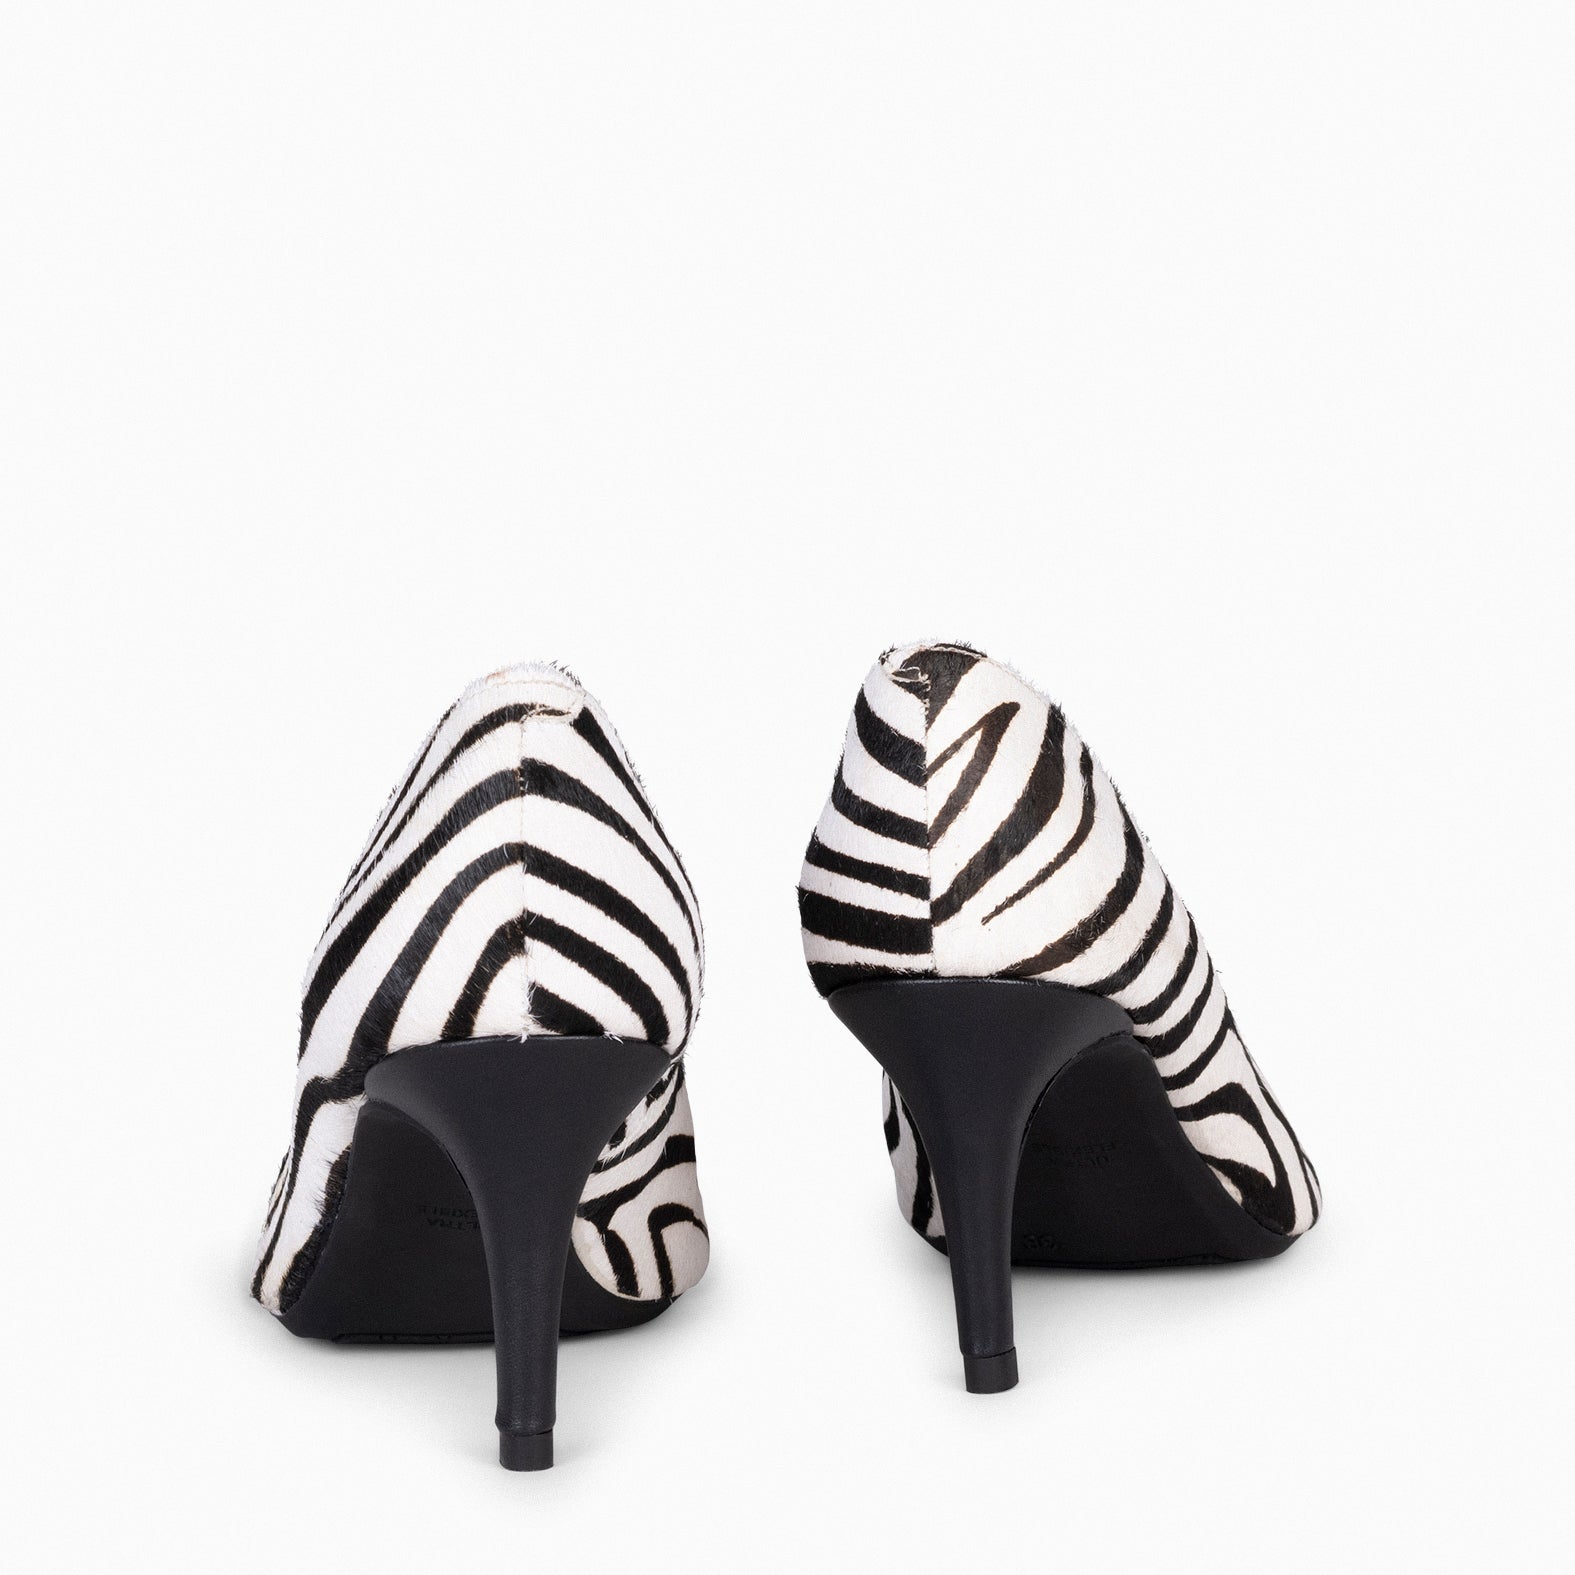 STILETTO WILD - Zapatos de tacón de aguja con animal print CEBRA BLANCO